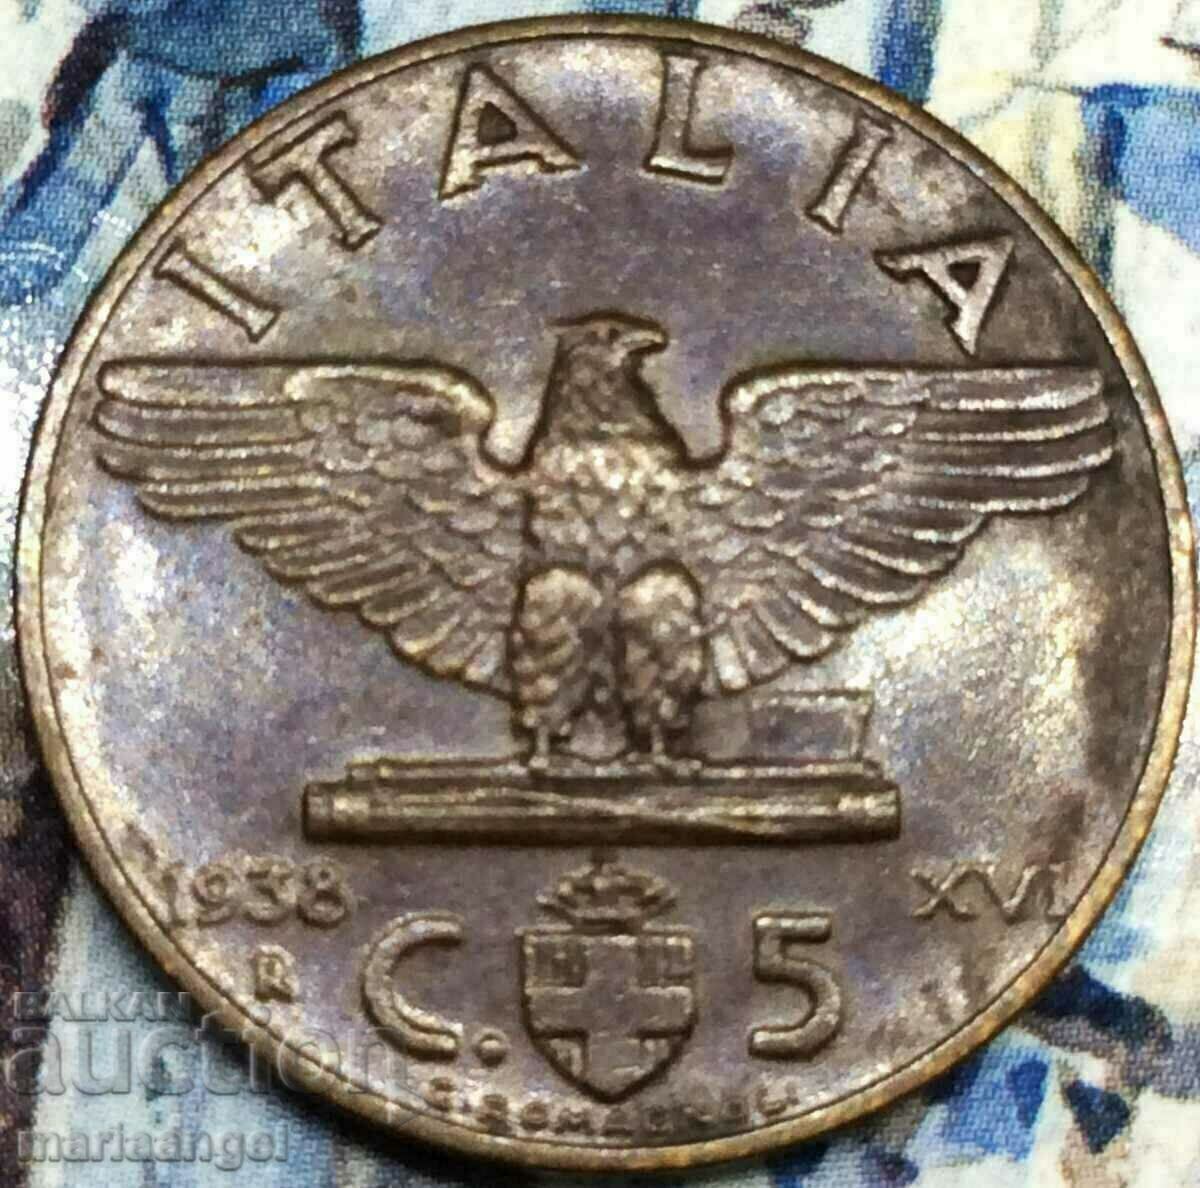 1938 5 centesimi Italia Vultur bronz